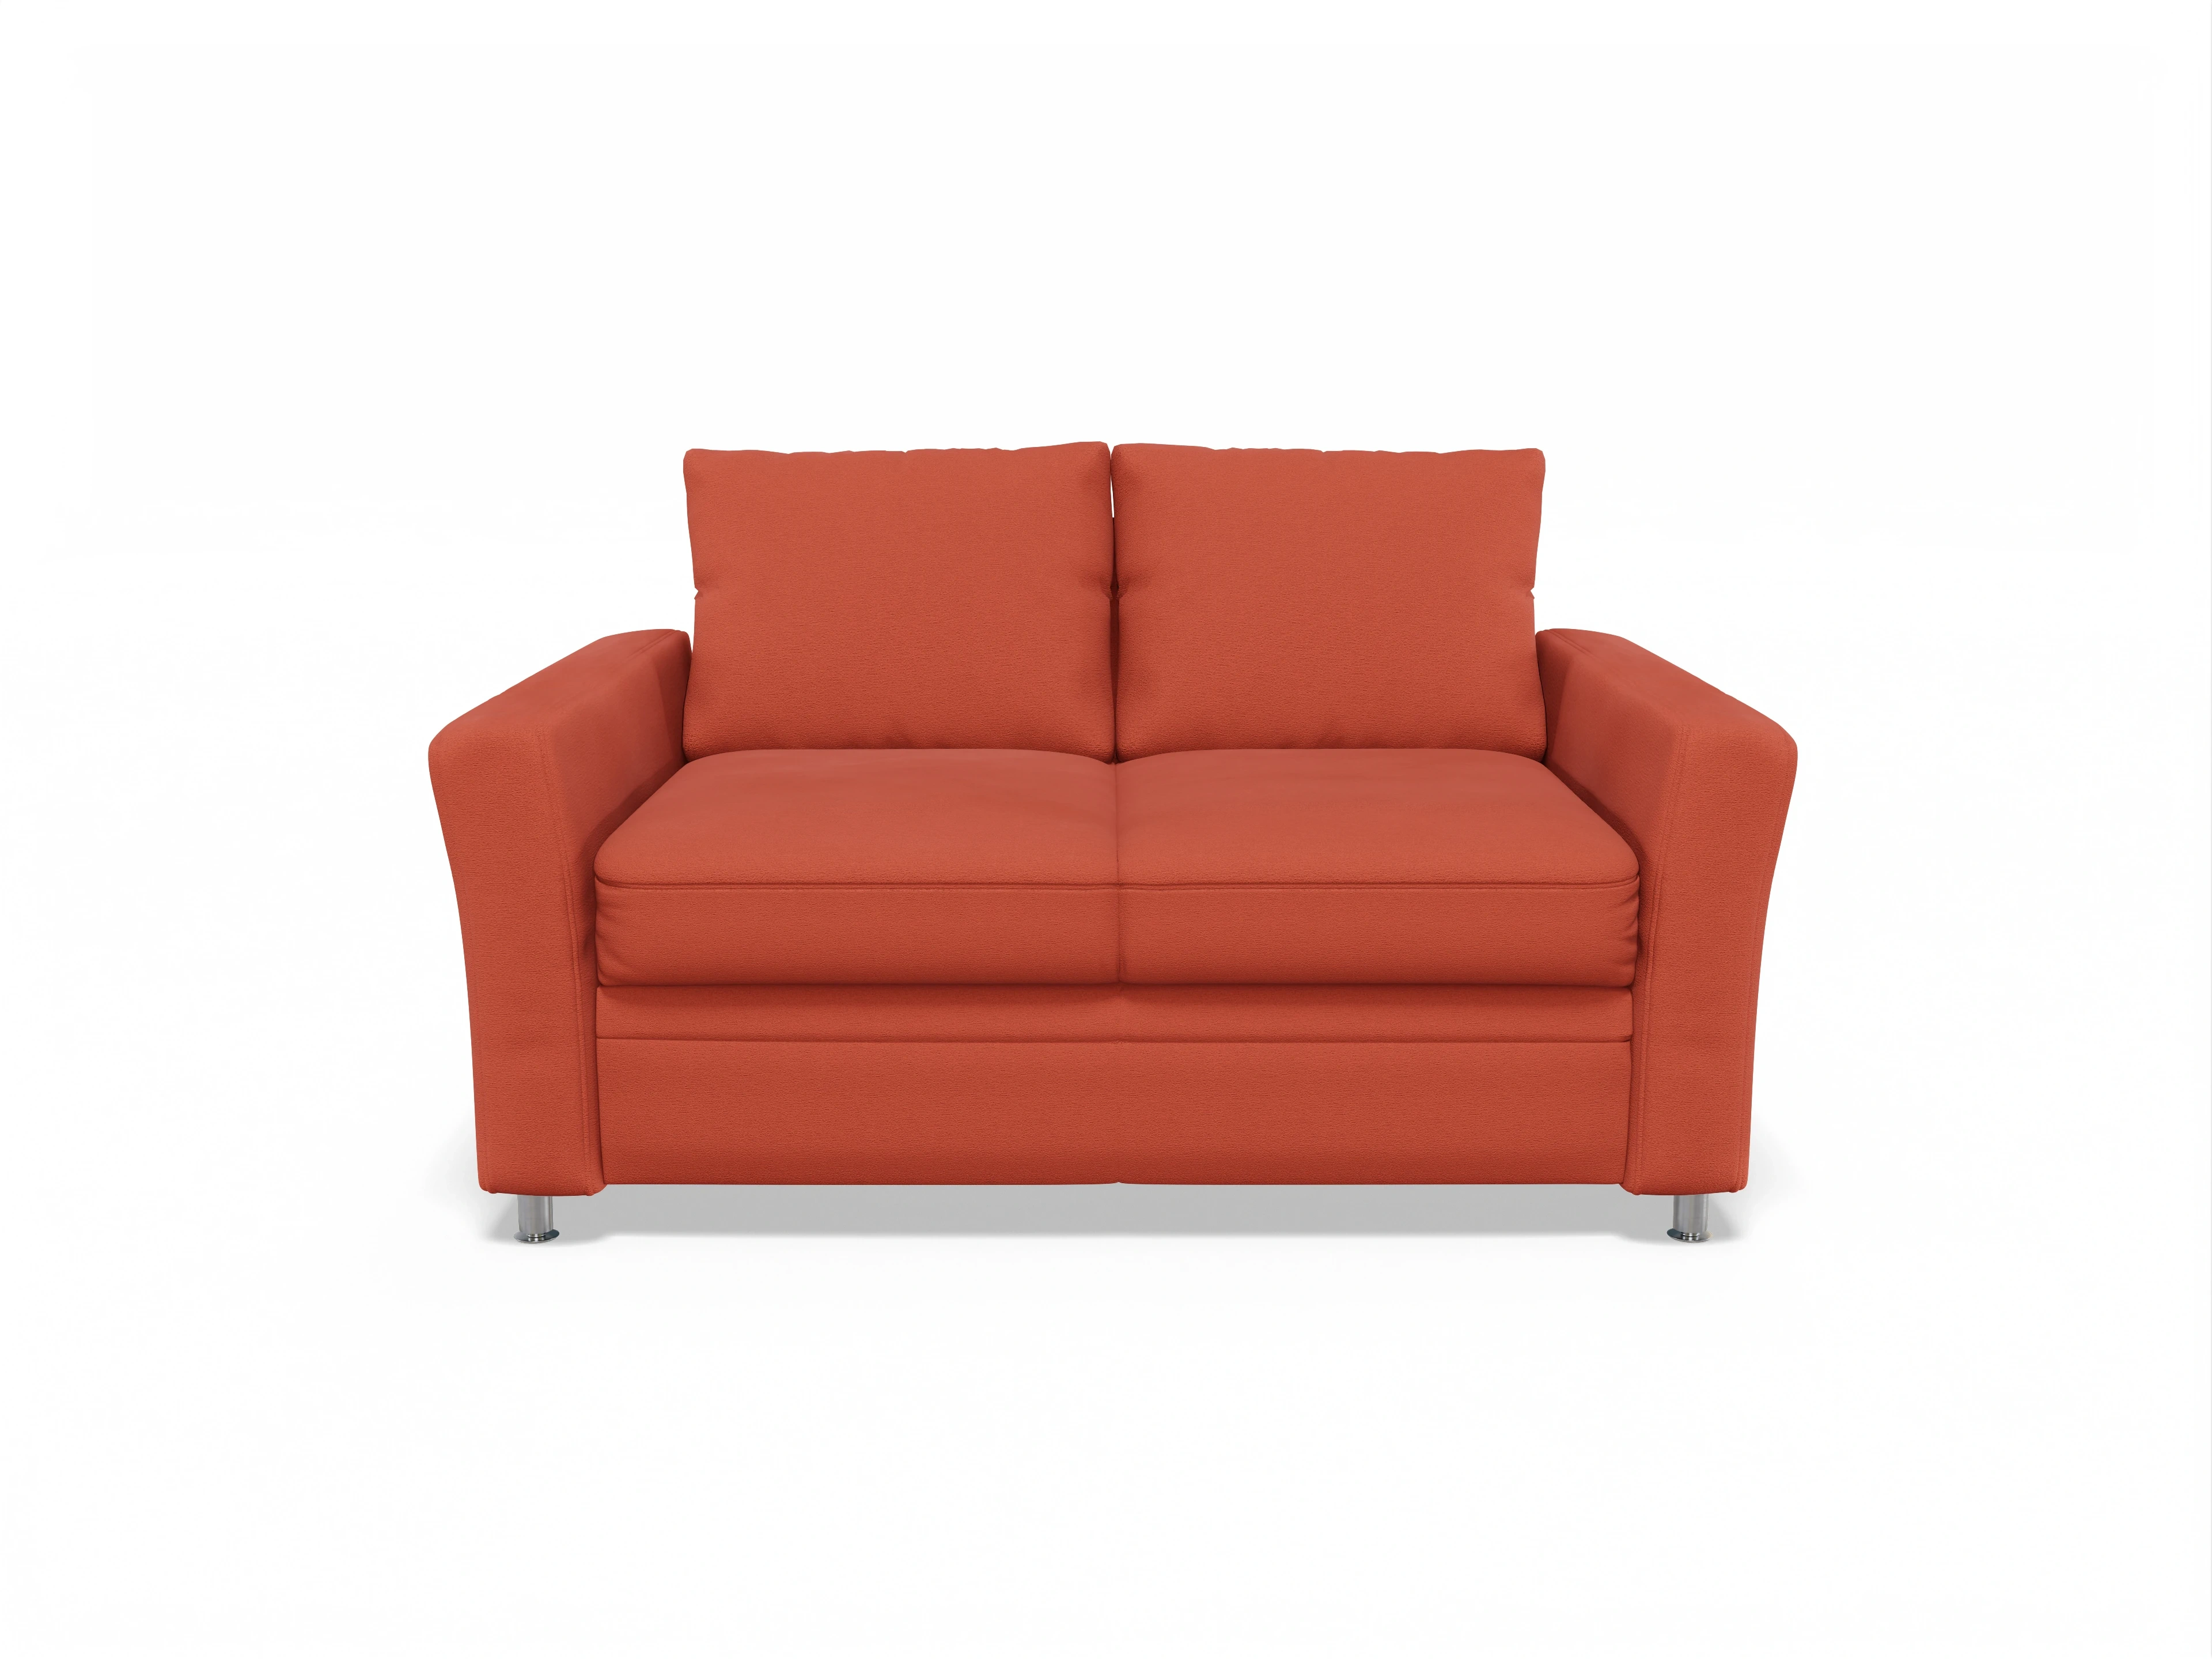 Sofa orange aus der Farbwelt Multipolster